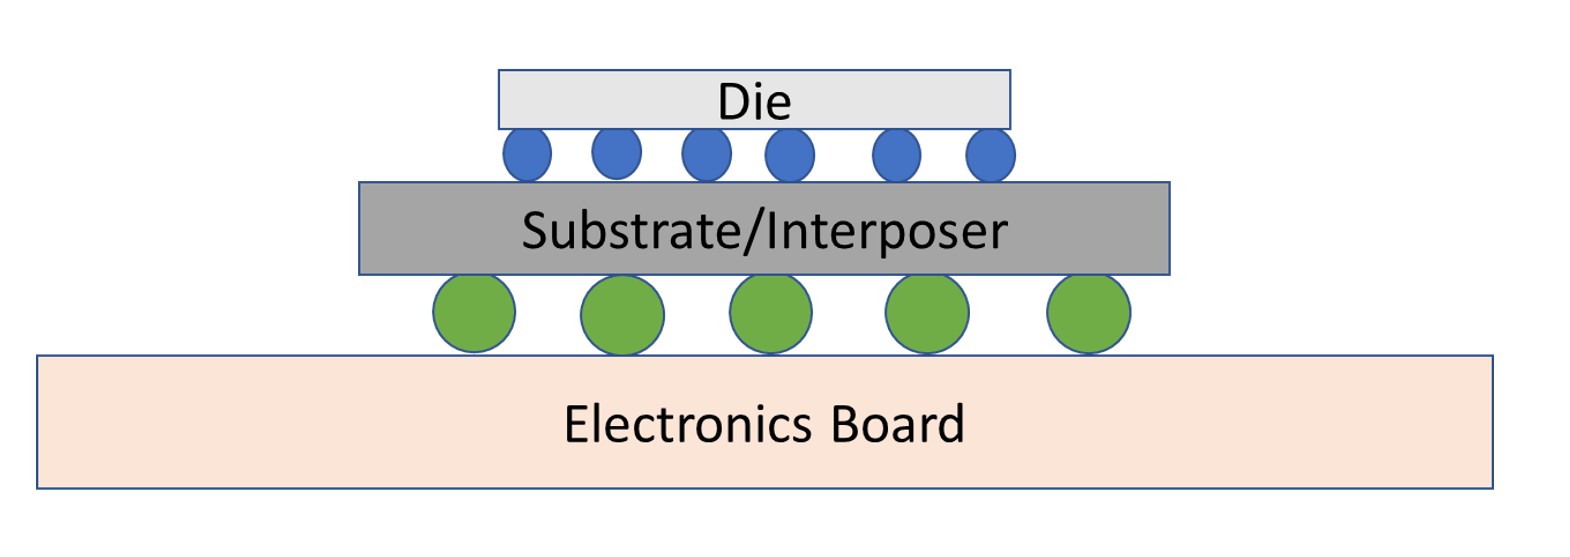 Hình 4: Sơ đồ khái niệm về đóng gói flip-chip. Nguồn: A. Meixner/Kỹ thuật bán dẫn